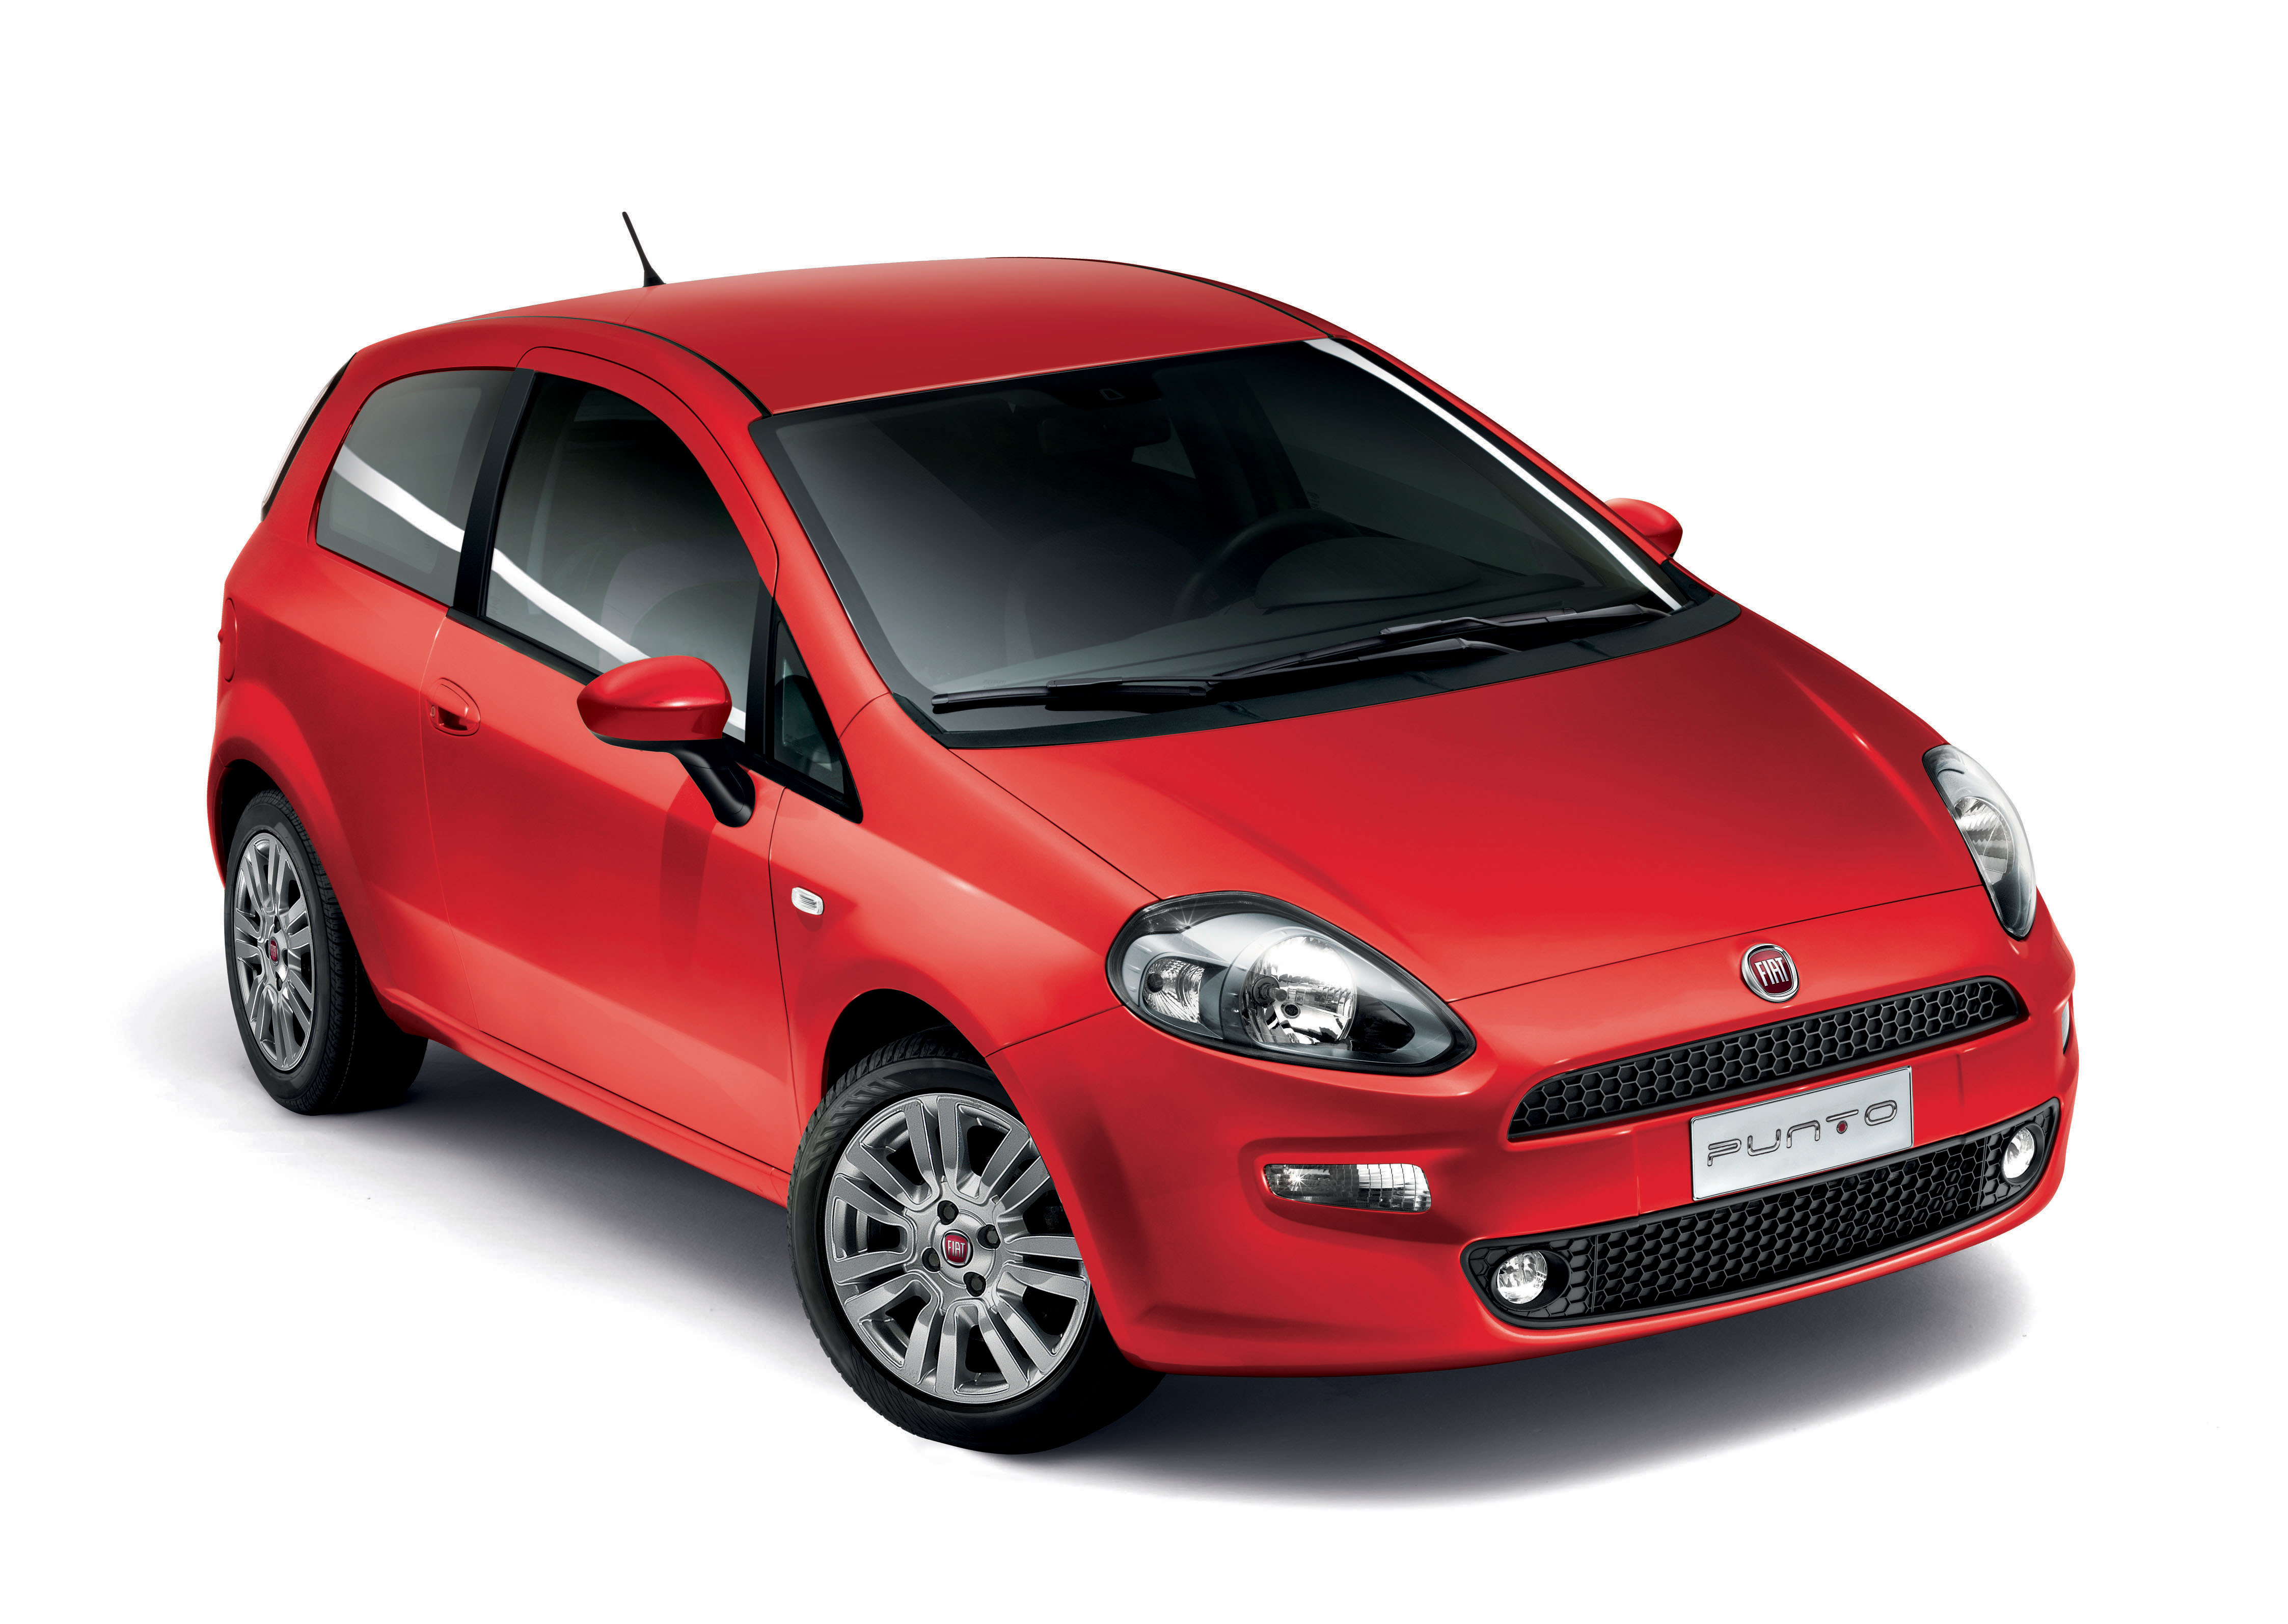 incentivi auto Fiat agosto 2015